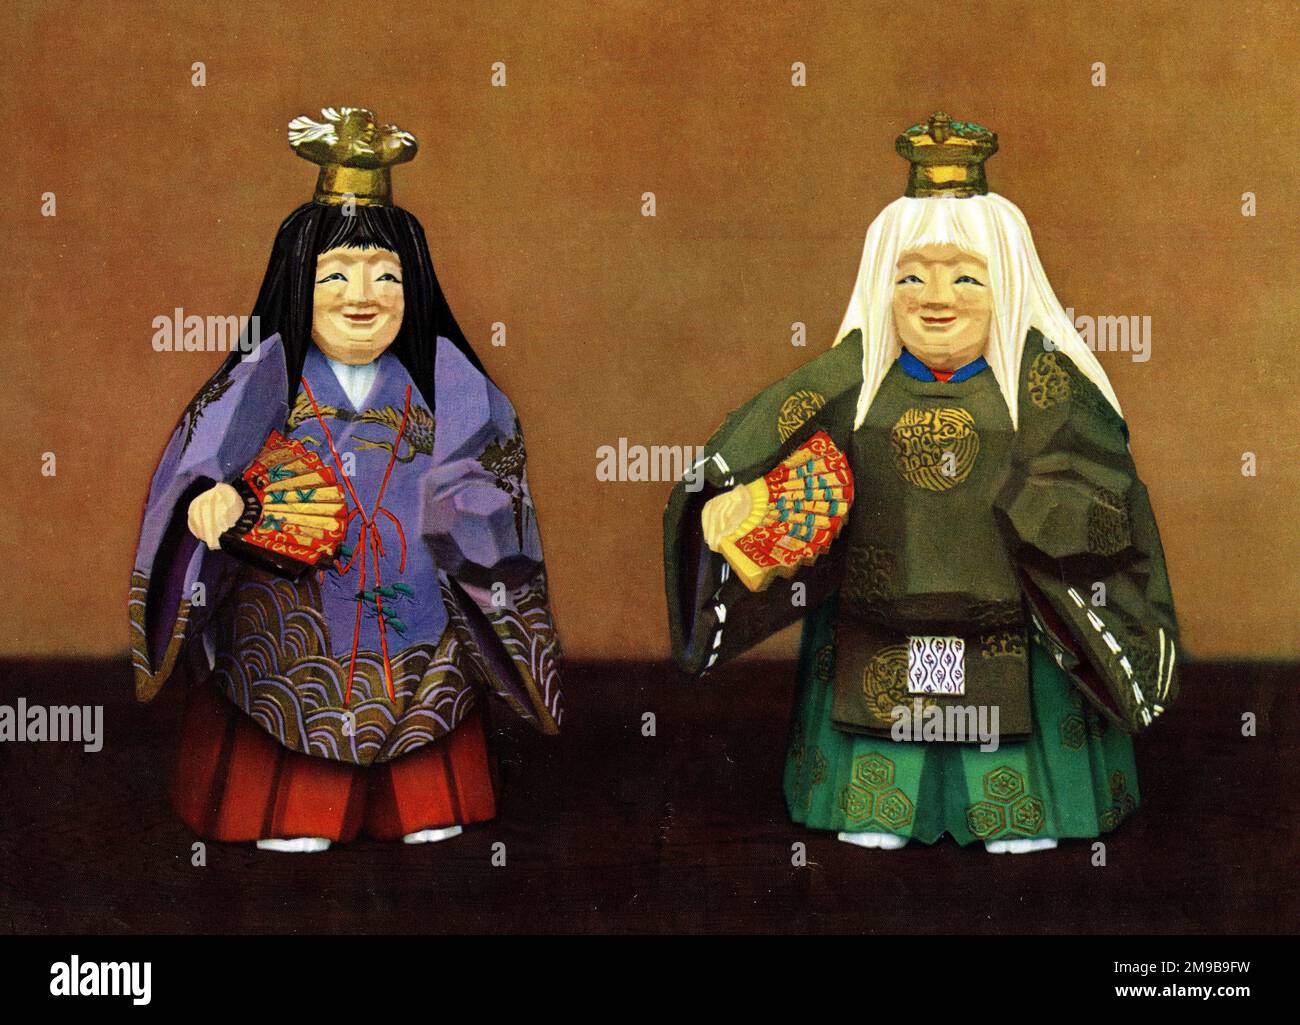 Japanische Nara-Puppen – Holzgeschnitzte Puppen, die bei einem Festival des Kasuga-Schreins zur Zeit von Kaiser Sutoku im Jahr 1137 zu dekorativen Zwecken verwendet wurden. Hier sehen Sie Puppen, die Figuren aus dem Noh-Stück Tsurukame darstellen (Tsunu bedeutet Storch, kame bedeutet Schildkröte, beide stehen für Langlebigkeit). Stockfoto